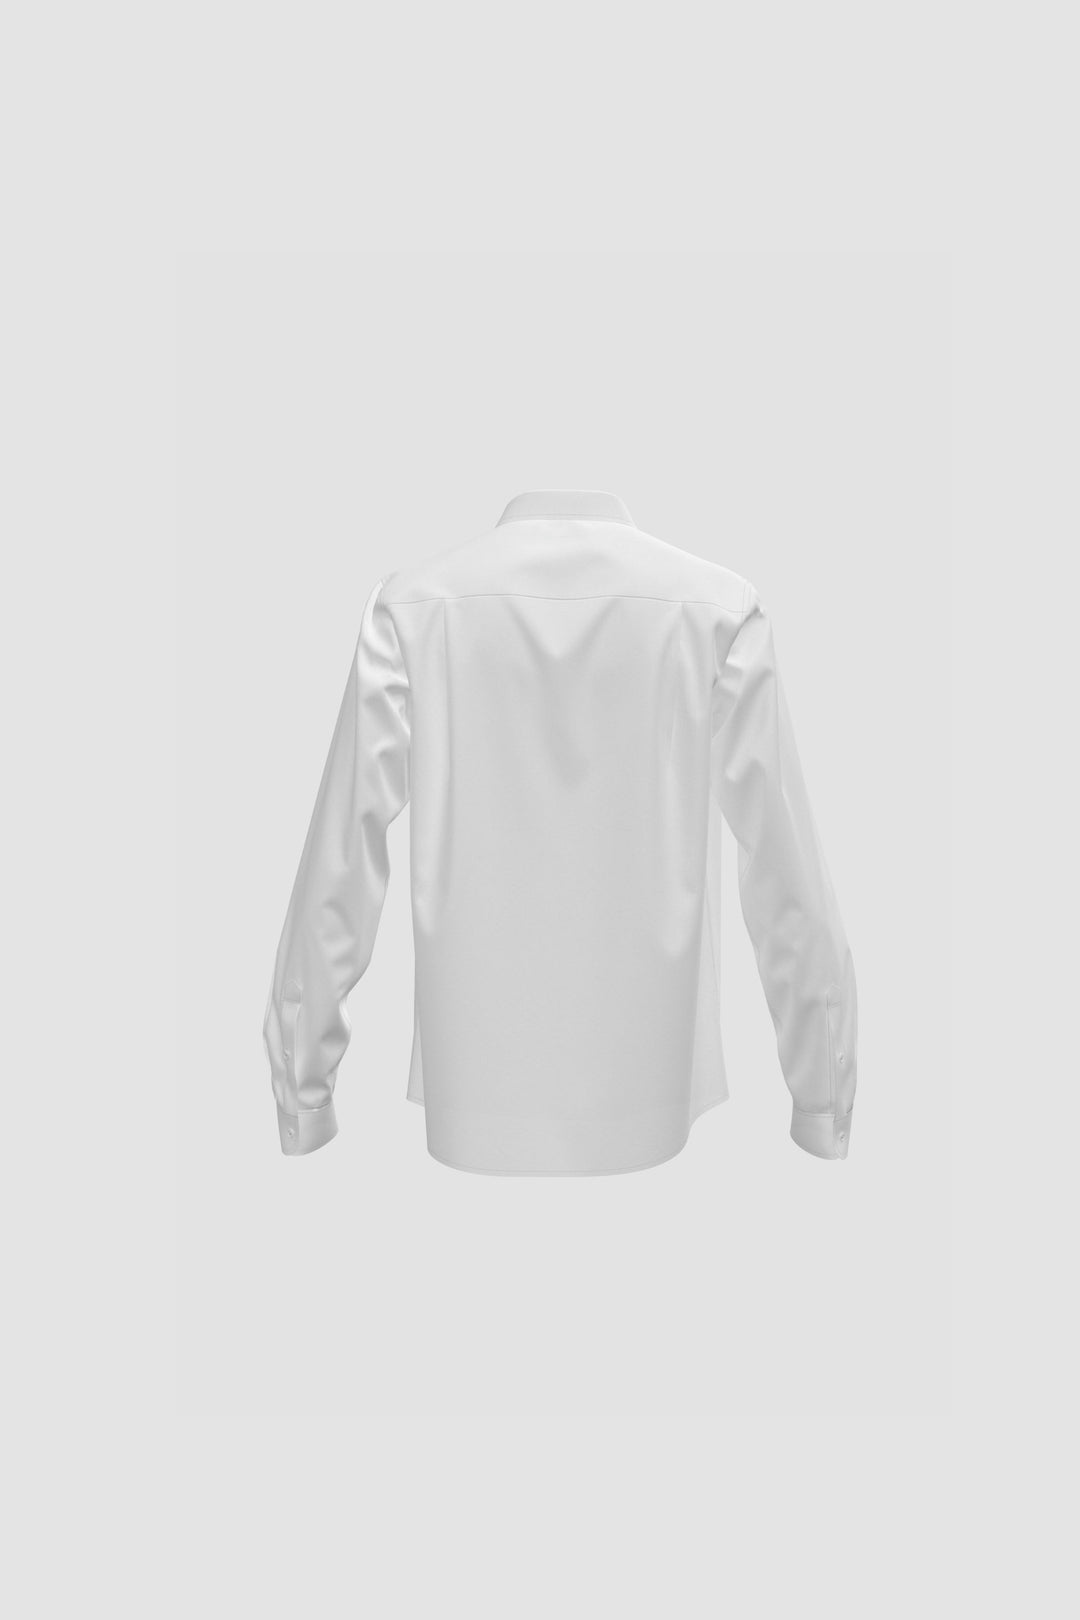 <b>TSKVG</b> AW Boy's Long Sleeve Shirt (MTB2002)